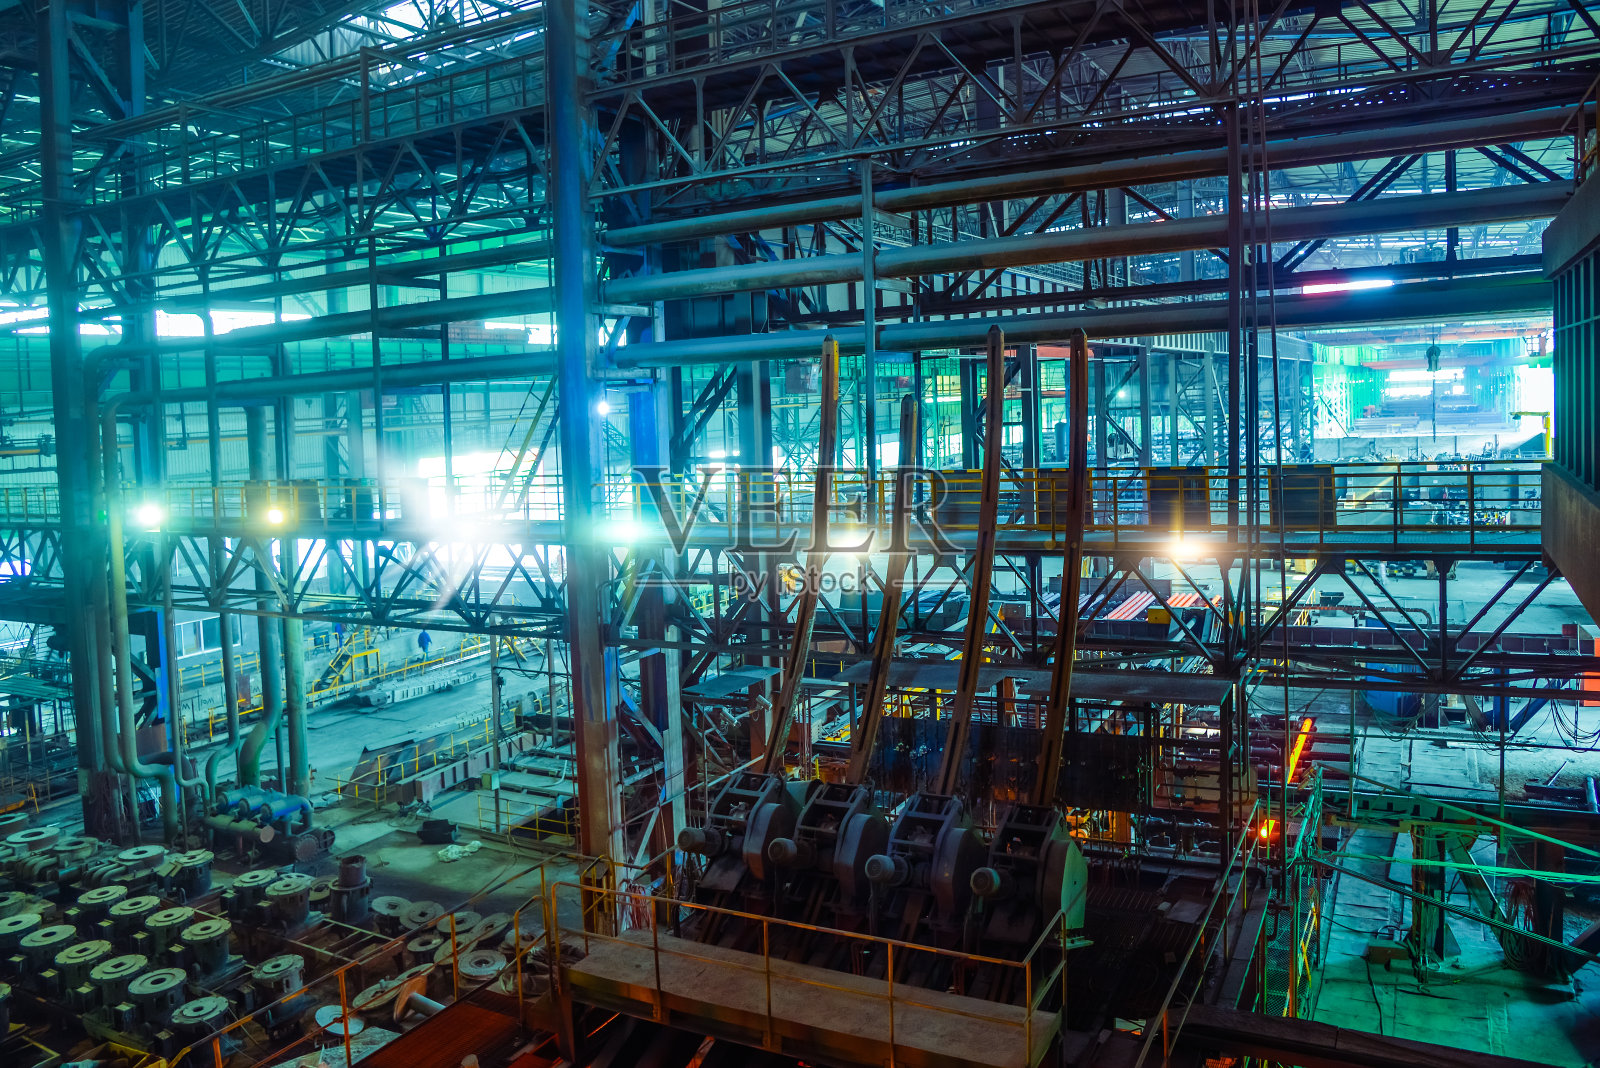 钢铁厂的车间照片摄影图片